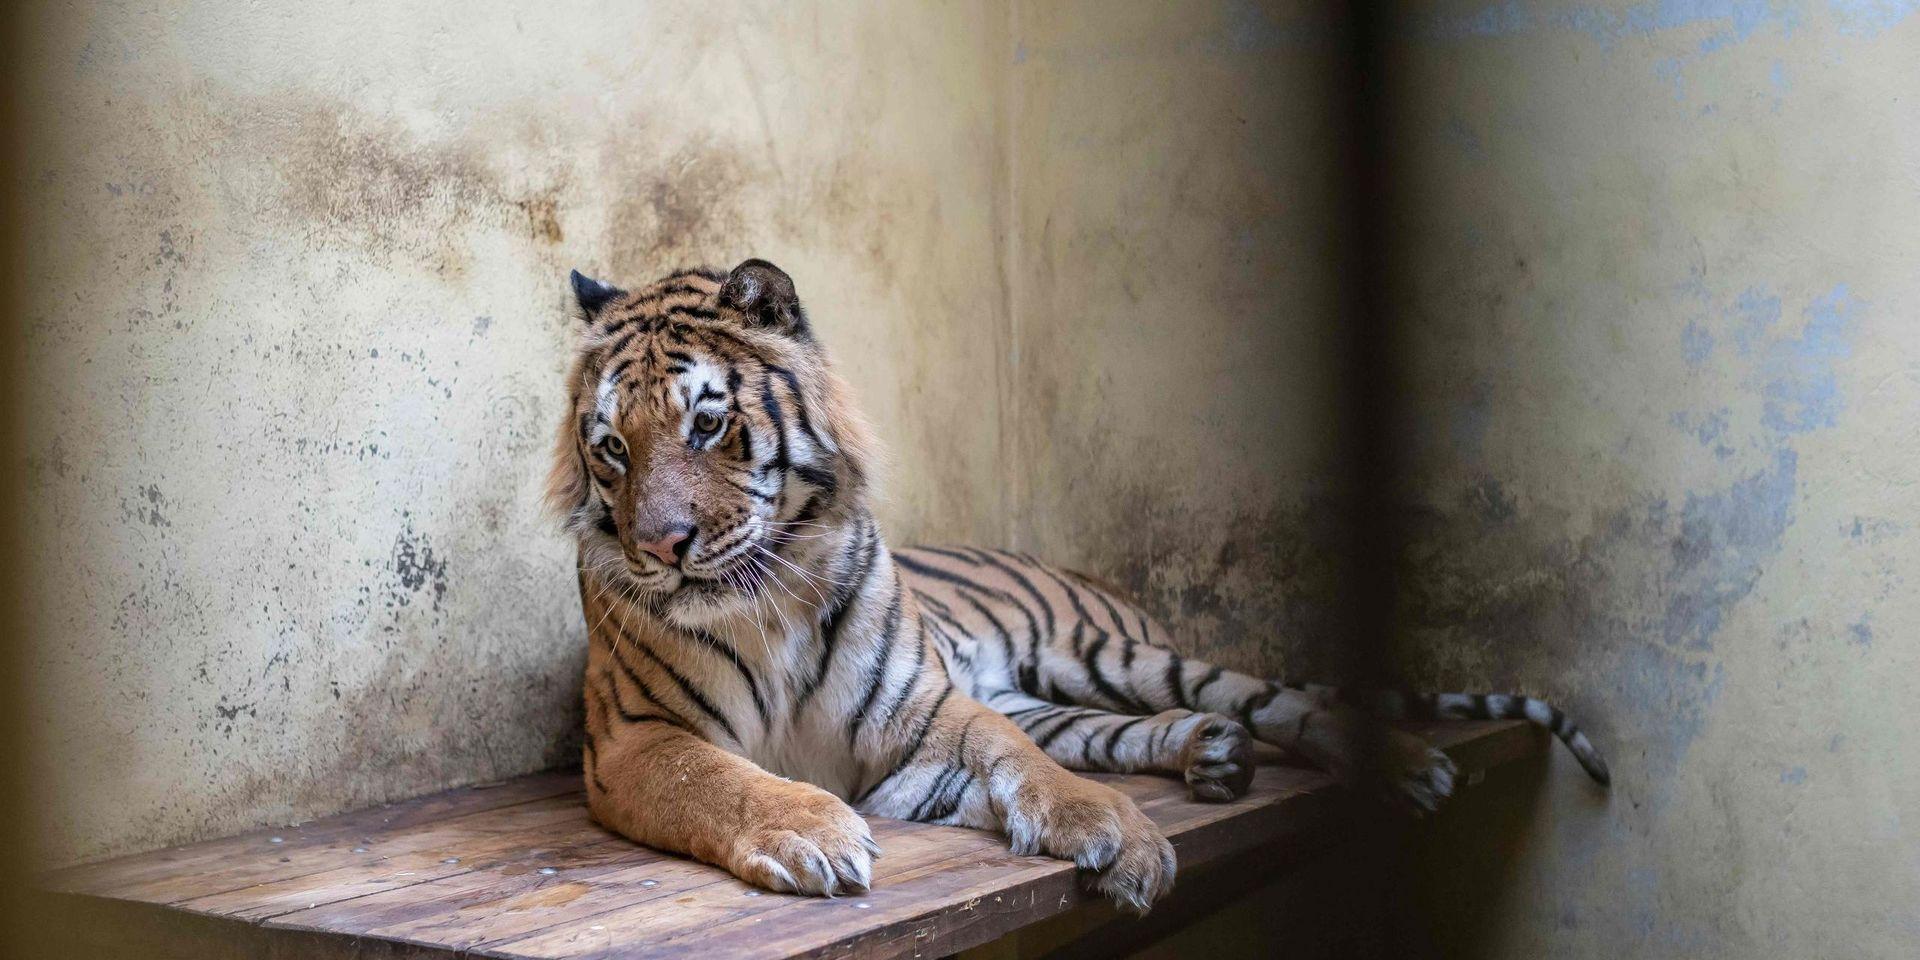 En av de tigrar som hittades i en lastbil vid gränsen mellan Polen och Vitryssland. Tigrarna befinner sig nu i en djurpark där de håller på att återhämta sig.